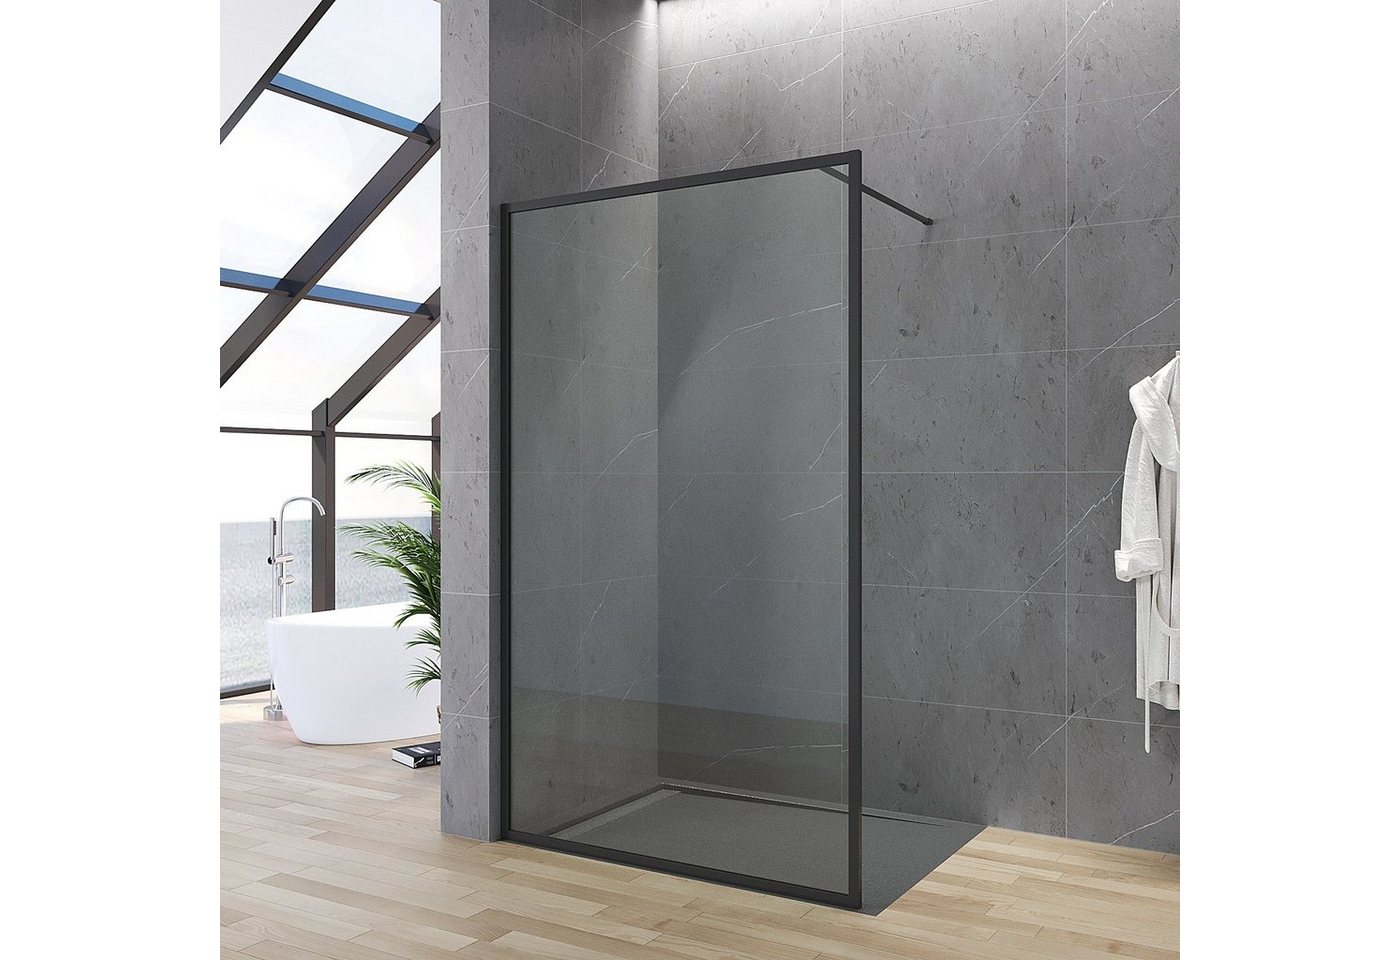 AQUABATOS Duschwand Duschwand schwarz Glas 80x203 90x203 100x203 110x203 120x203 cm, 8 mm Einscheibensicherheitsglas, Nano Beschichtung, Vollrahmen, mit Verstellbereich von AQUABATOS